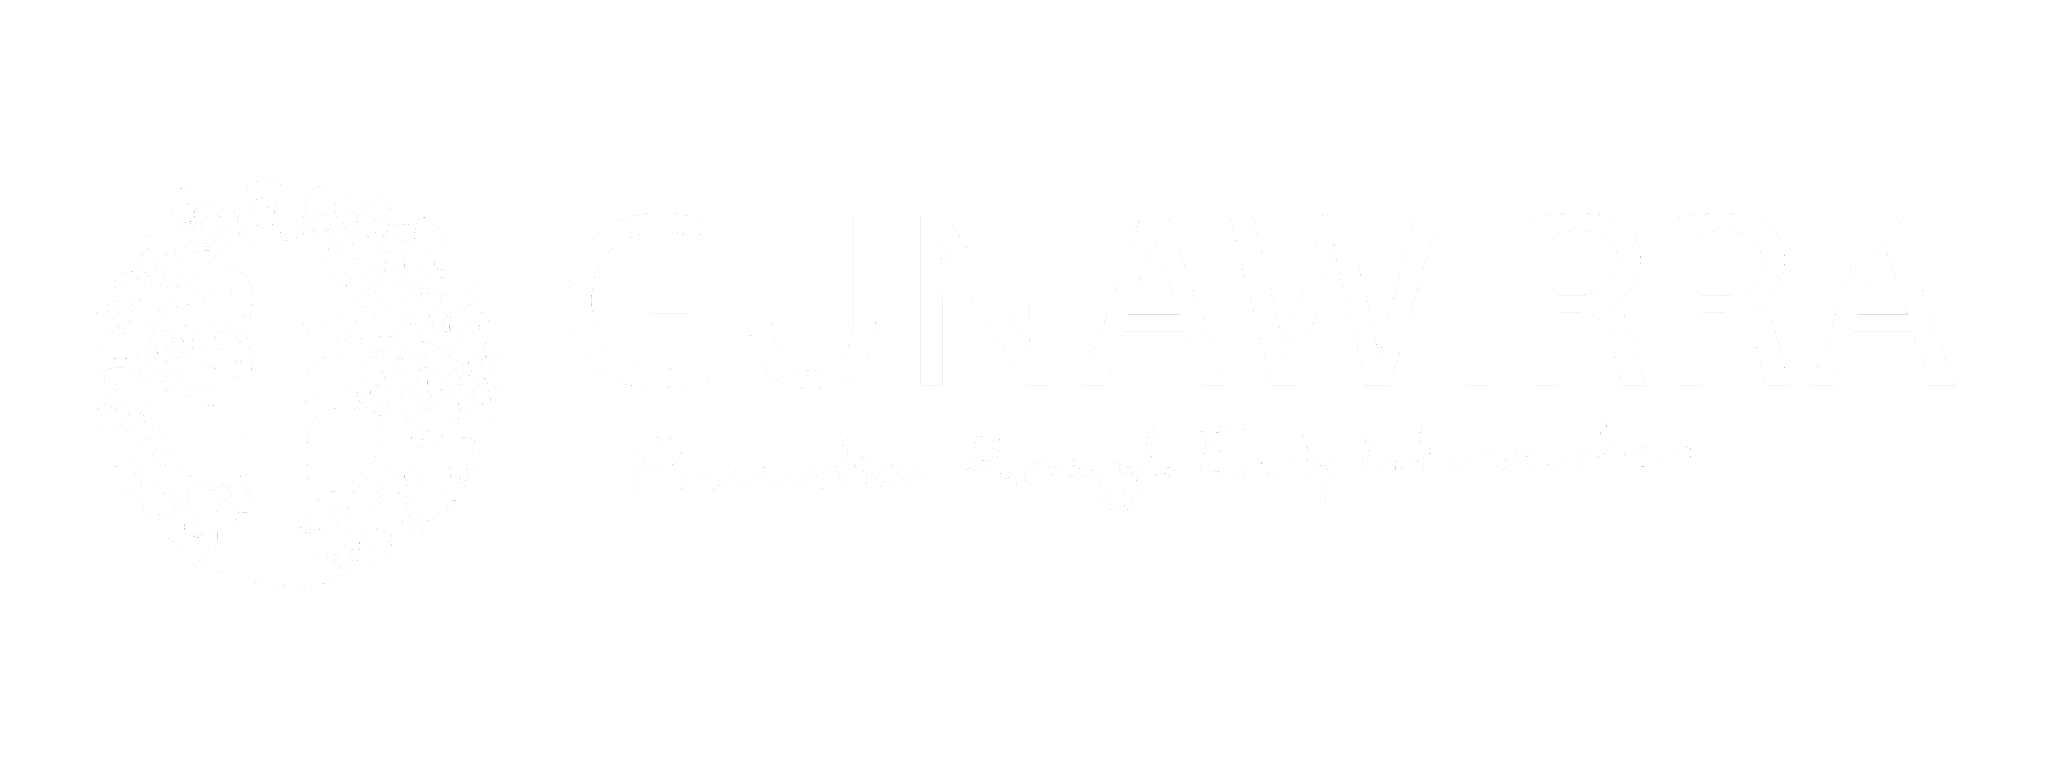 Gunawirra